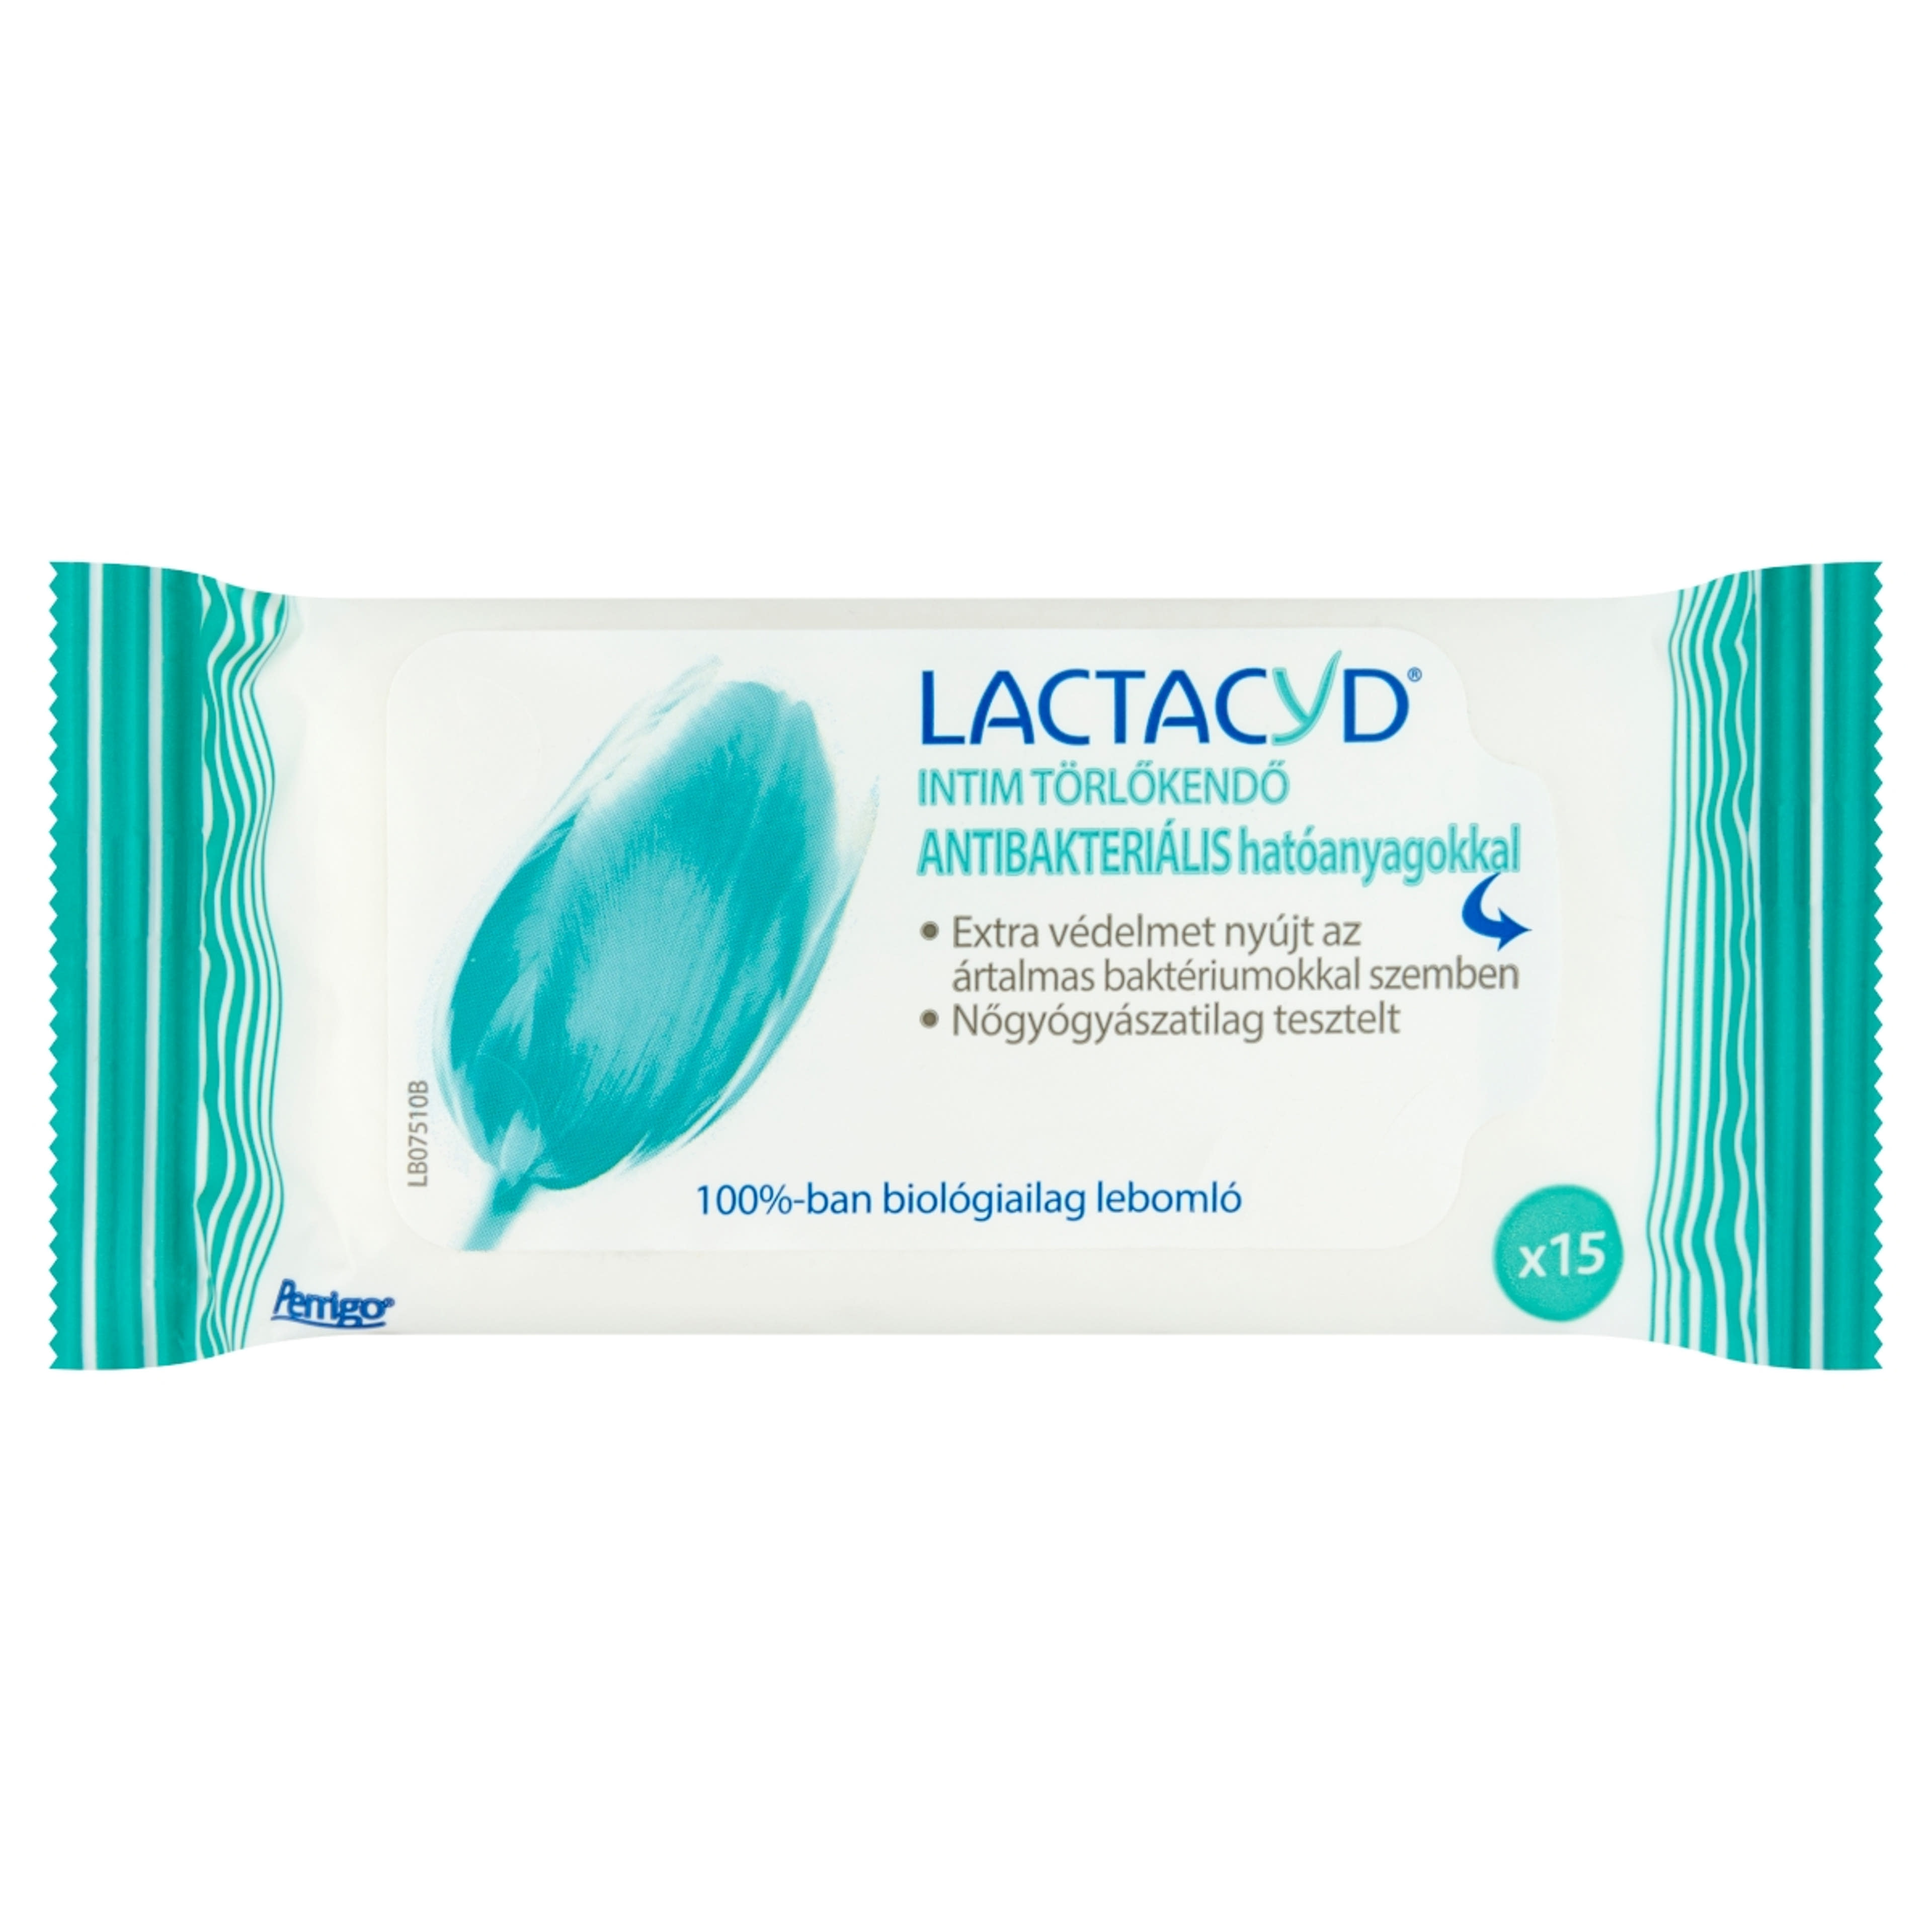 Lactacyd törlőkendő antibakteriális - 15 db